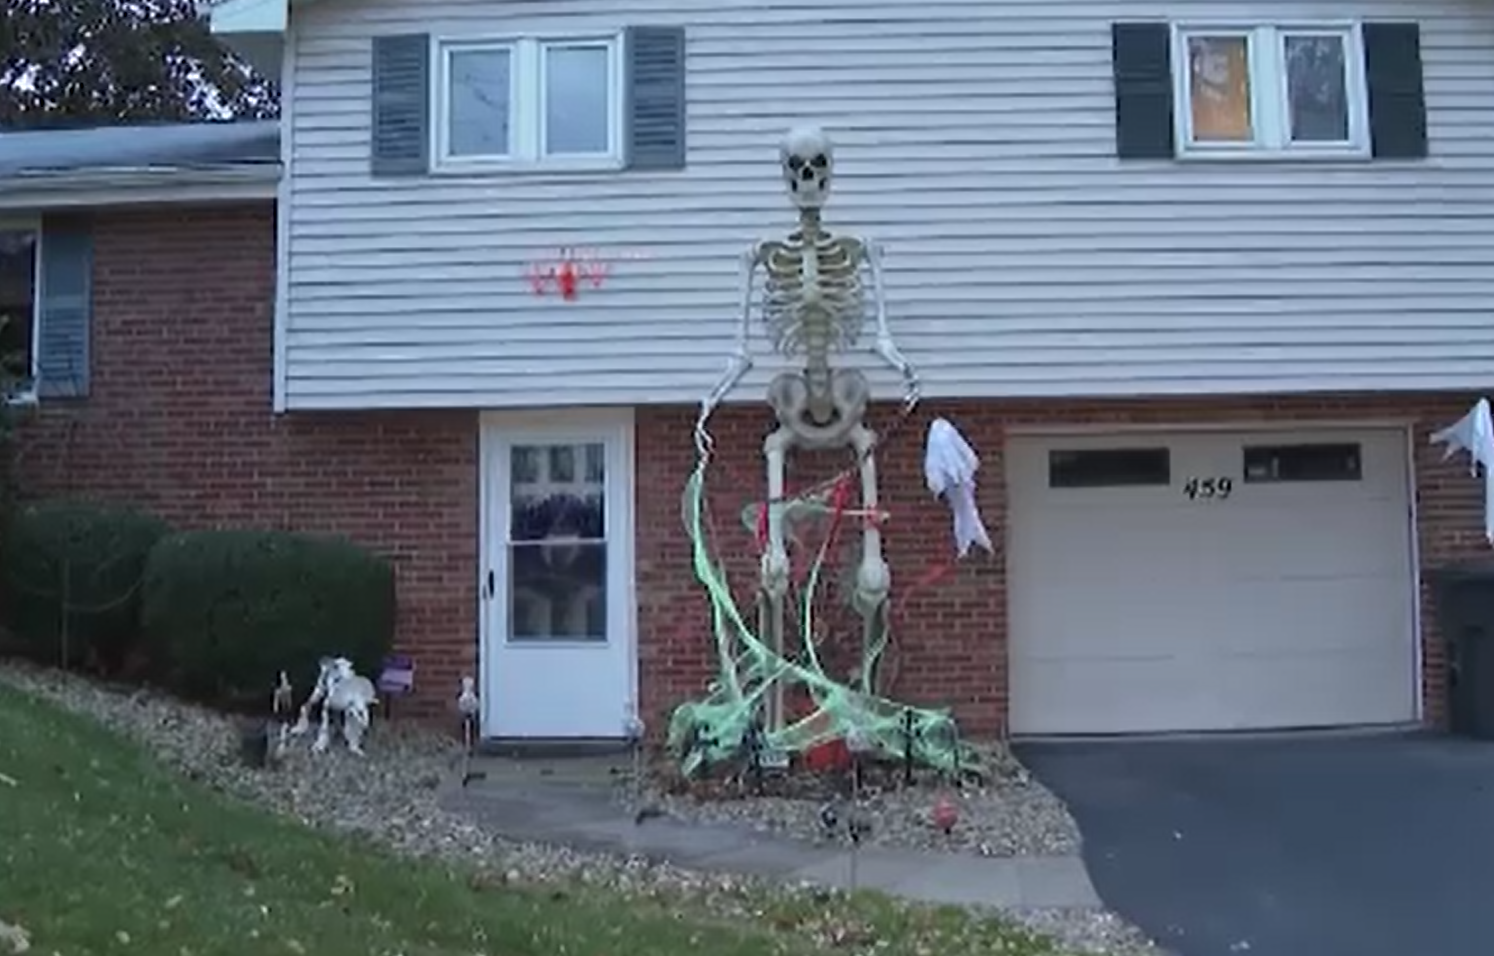 Decorațiunea de Halloween care face furori în SUA. La ce preț a ajuns să fie vândută